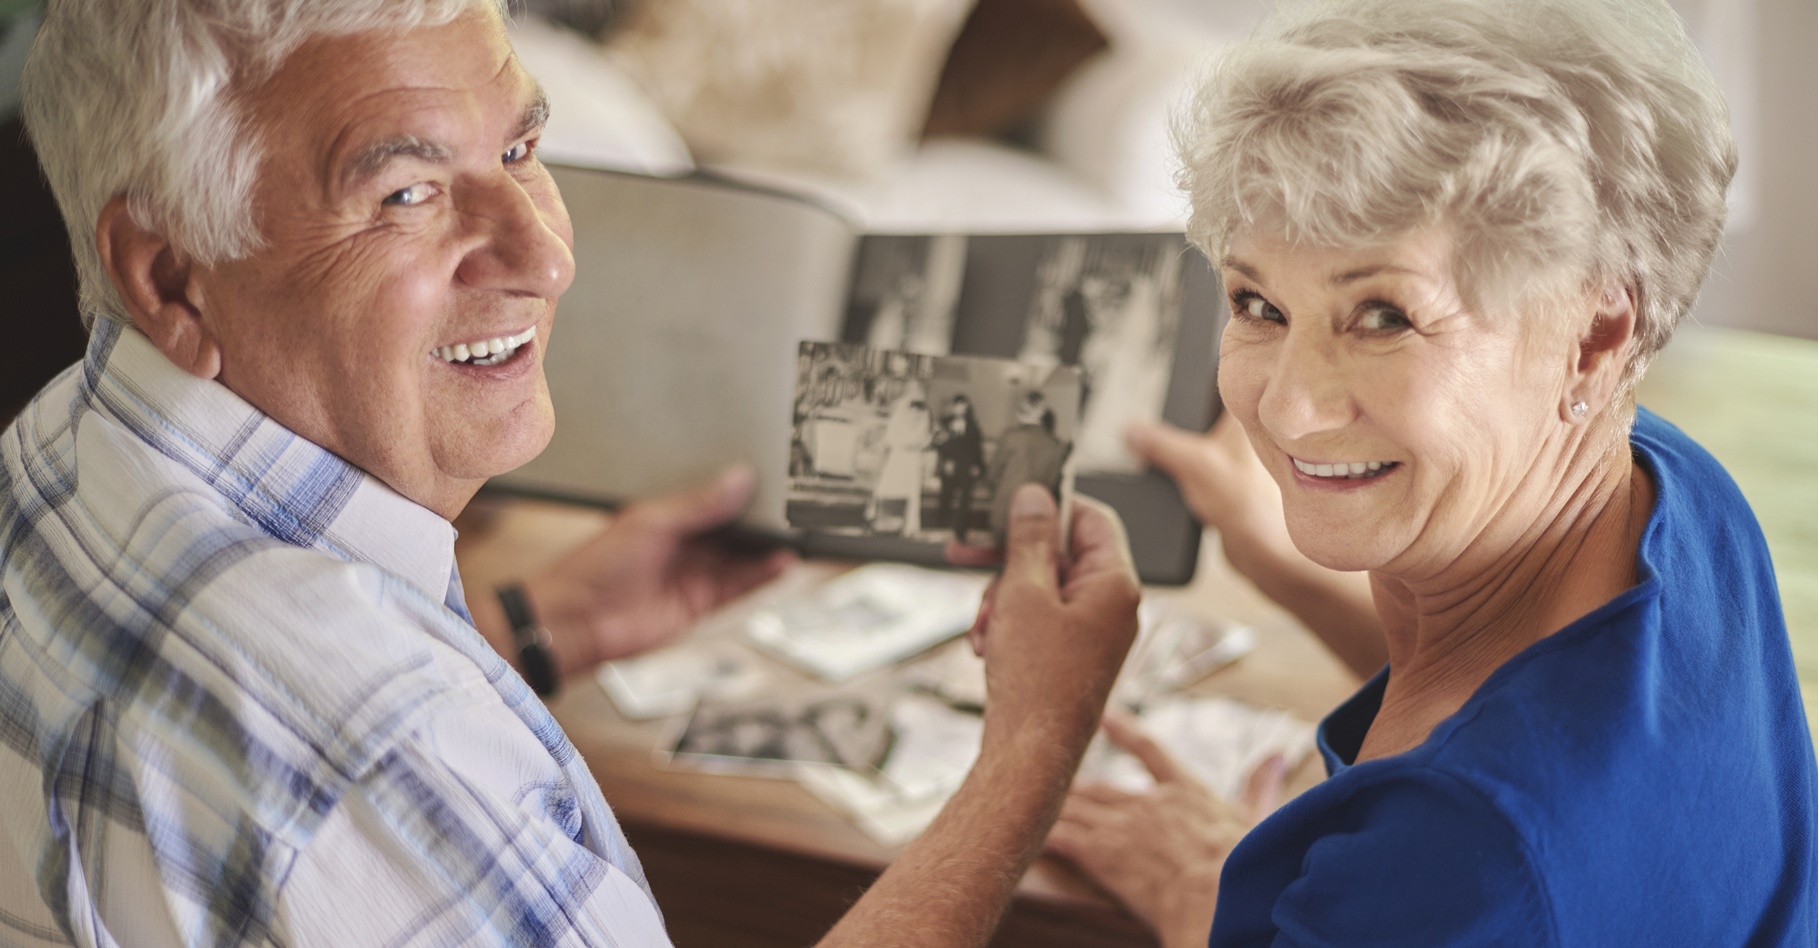 Au cours du vieillissement, la mémoire devient moins efficace. © gpointstudio, Shutterstock